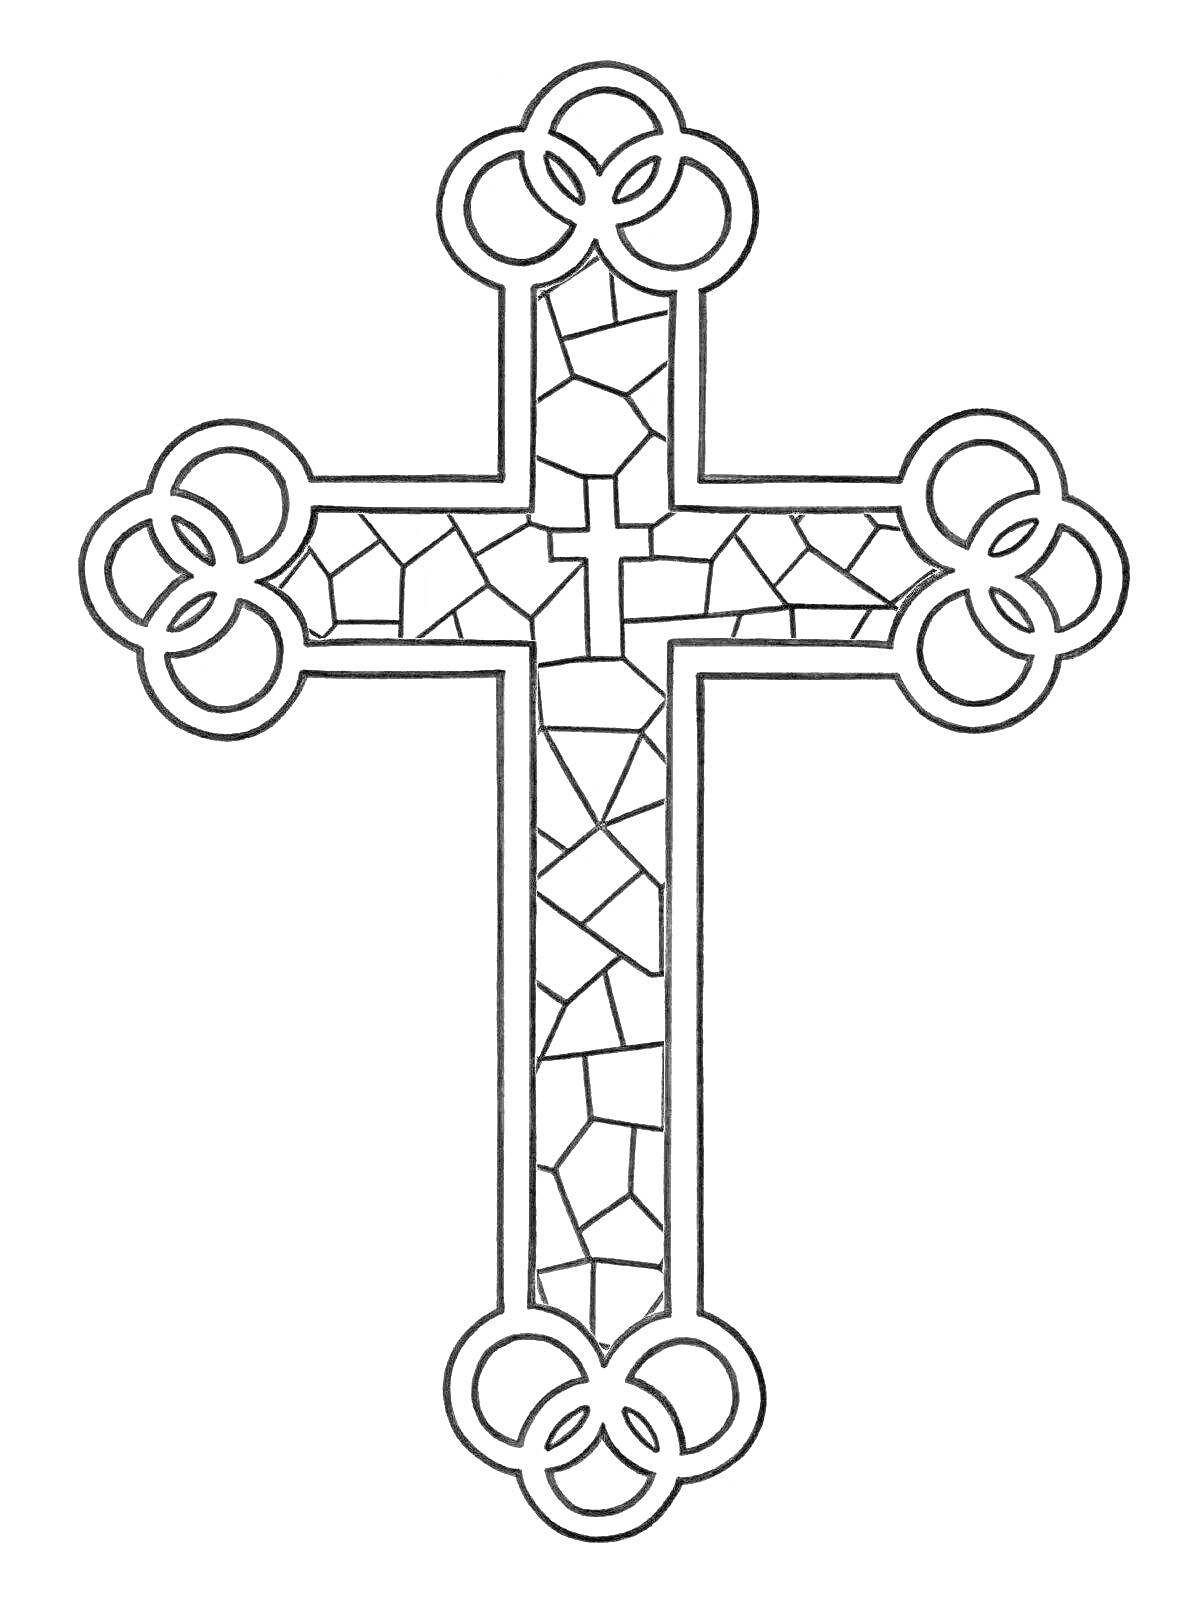 Раскраска Крест с геометрическим узором и узорами из колец на концах